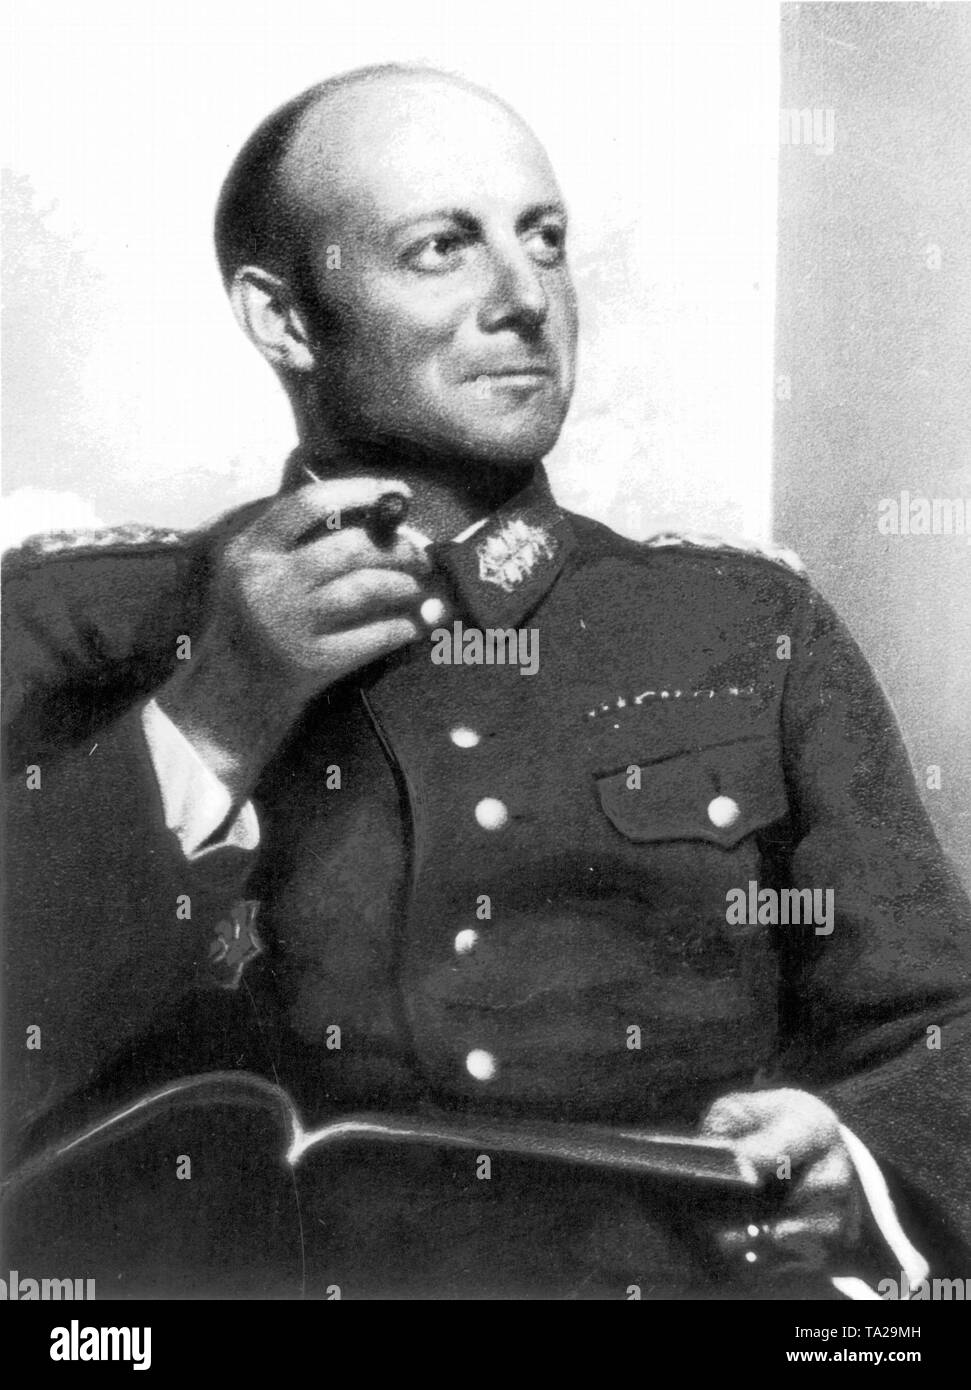 Henning von Tresckow (geb. 10.01.1901, d. 21.7.1944), General und Widerstandskämpfer, war maßgeblich an der Vorbereitung des Attentats auf Hitler am 20. Juli 1944 beteiligt. Von 1944 Portrait. Stockfoto